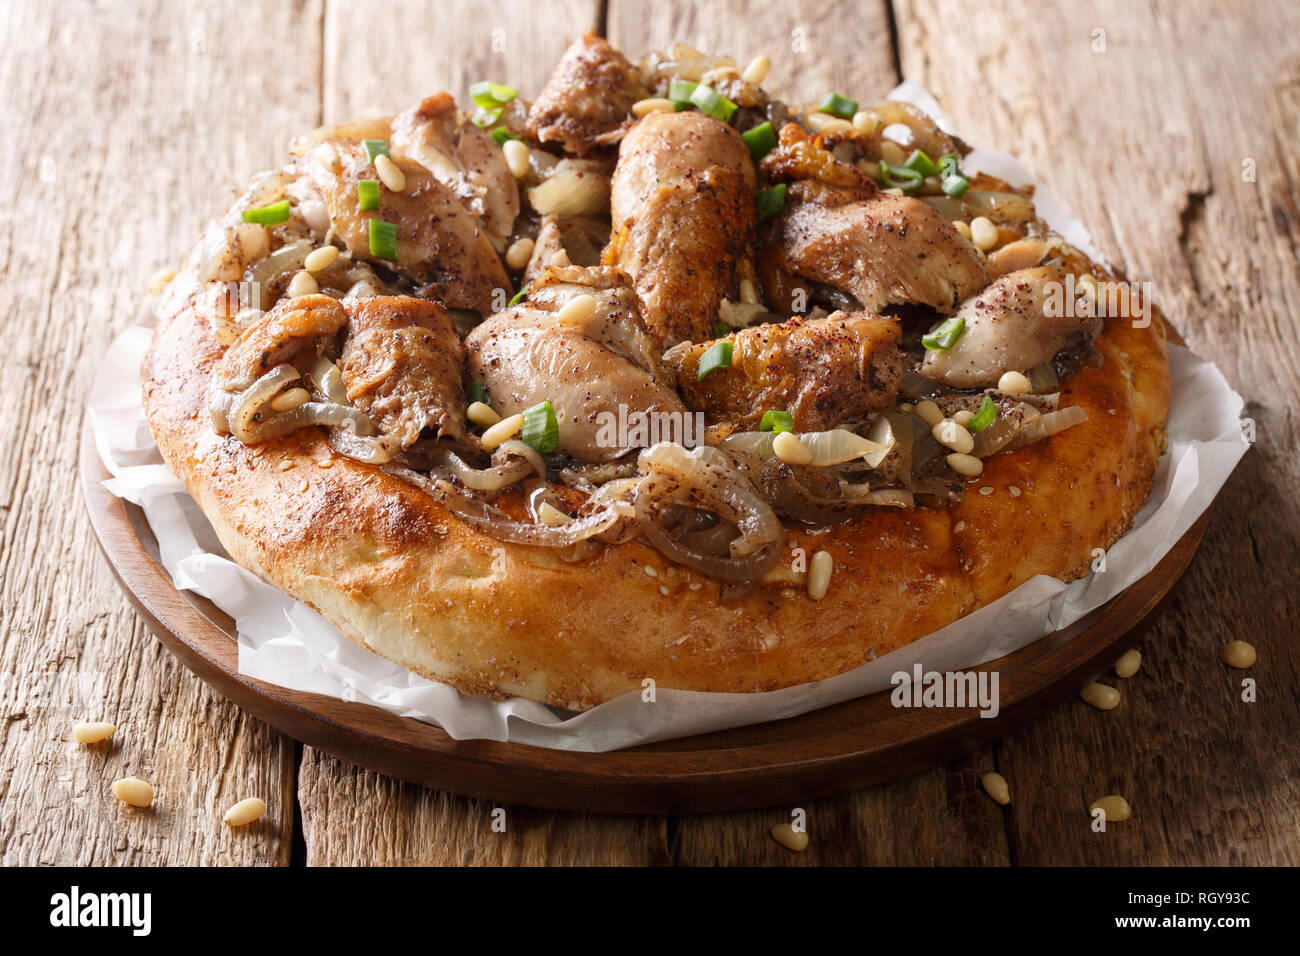 Im Nahen und Mittleren Osten Mahlzeit vom Huhn mit Sumach, Pinienkernen und Zwiebeln auf eine flache Brot Nahaufnahme auf dem Tisch. Horizontale Stockfoto